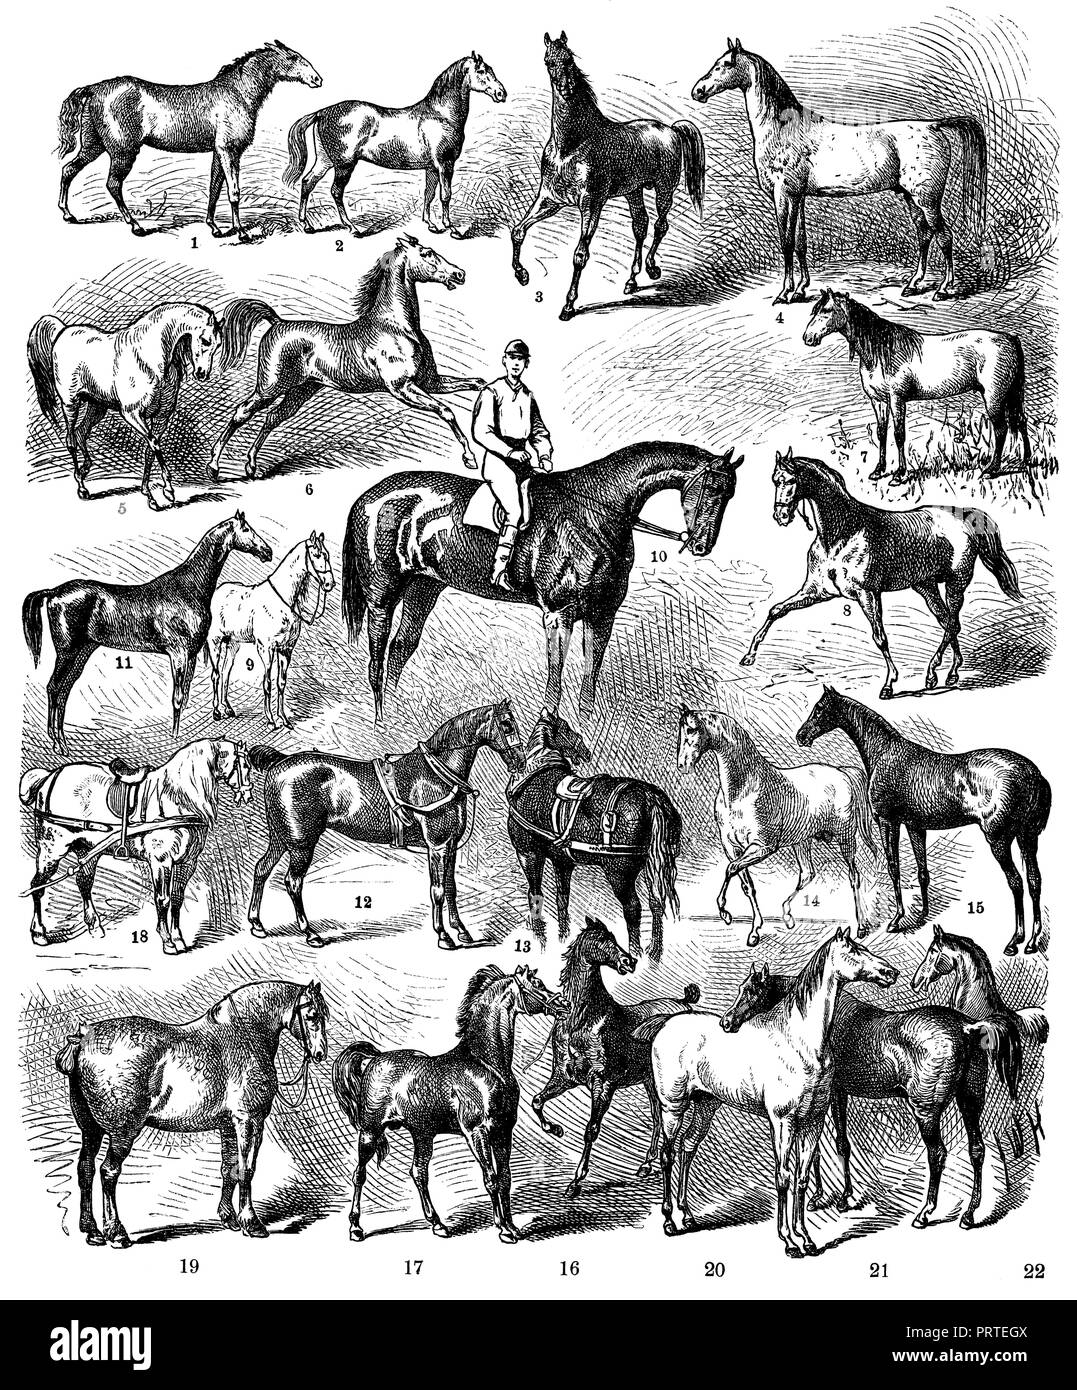 Les courses de chevaux. 1) Tarpan, 2), 3) Turkmainatti Tangus (arabes), 4) Tajar (arabes), 5) Les Marocains, 6) Circassiens, 7) Steppe russe cheval, 8) Russe Harttraber, 9), 10) Moldave La race de chevaux de pur-sang anglais (), 11) Anglais cheval de chasse (Hunter), 12) English Transport Horse (Cleveland), 13) Punch Suffolk (Angleterre), 14) Arabes, 15) Limousin (France), 16) Mellerand (France), 17) Cotentin (France ), 18) percheron, 19) Boulogne, 20) de l'Alt-Ivenacker Mecklenburg stud., 21) chevaux de Prusse (famille de Roderich et Rufus), Banque D'Images